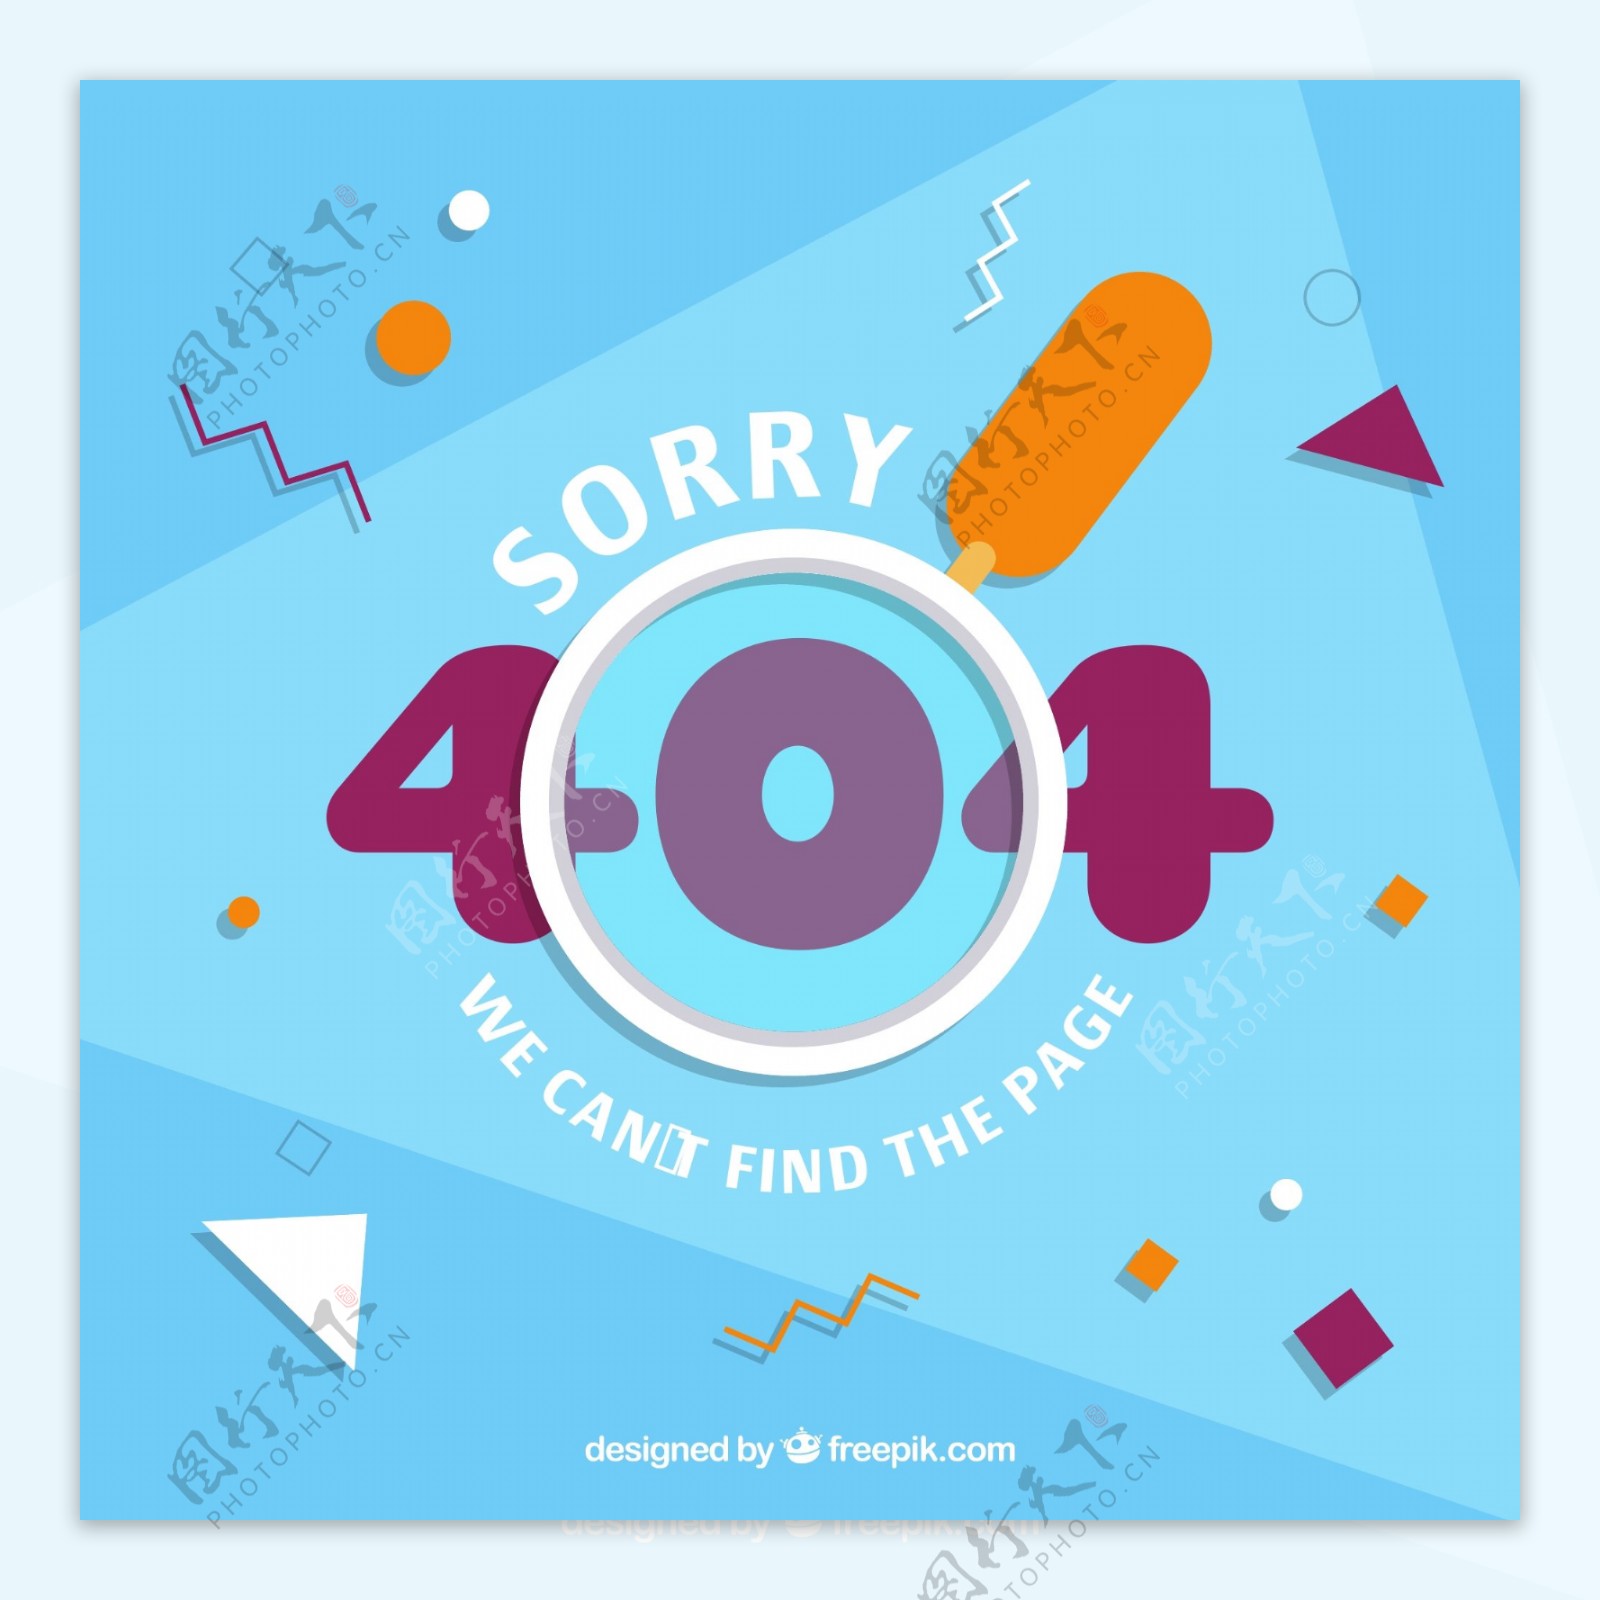 创意404错误页面放大镜矢量图